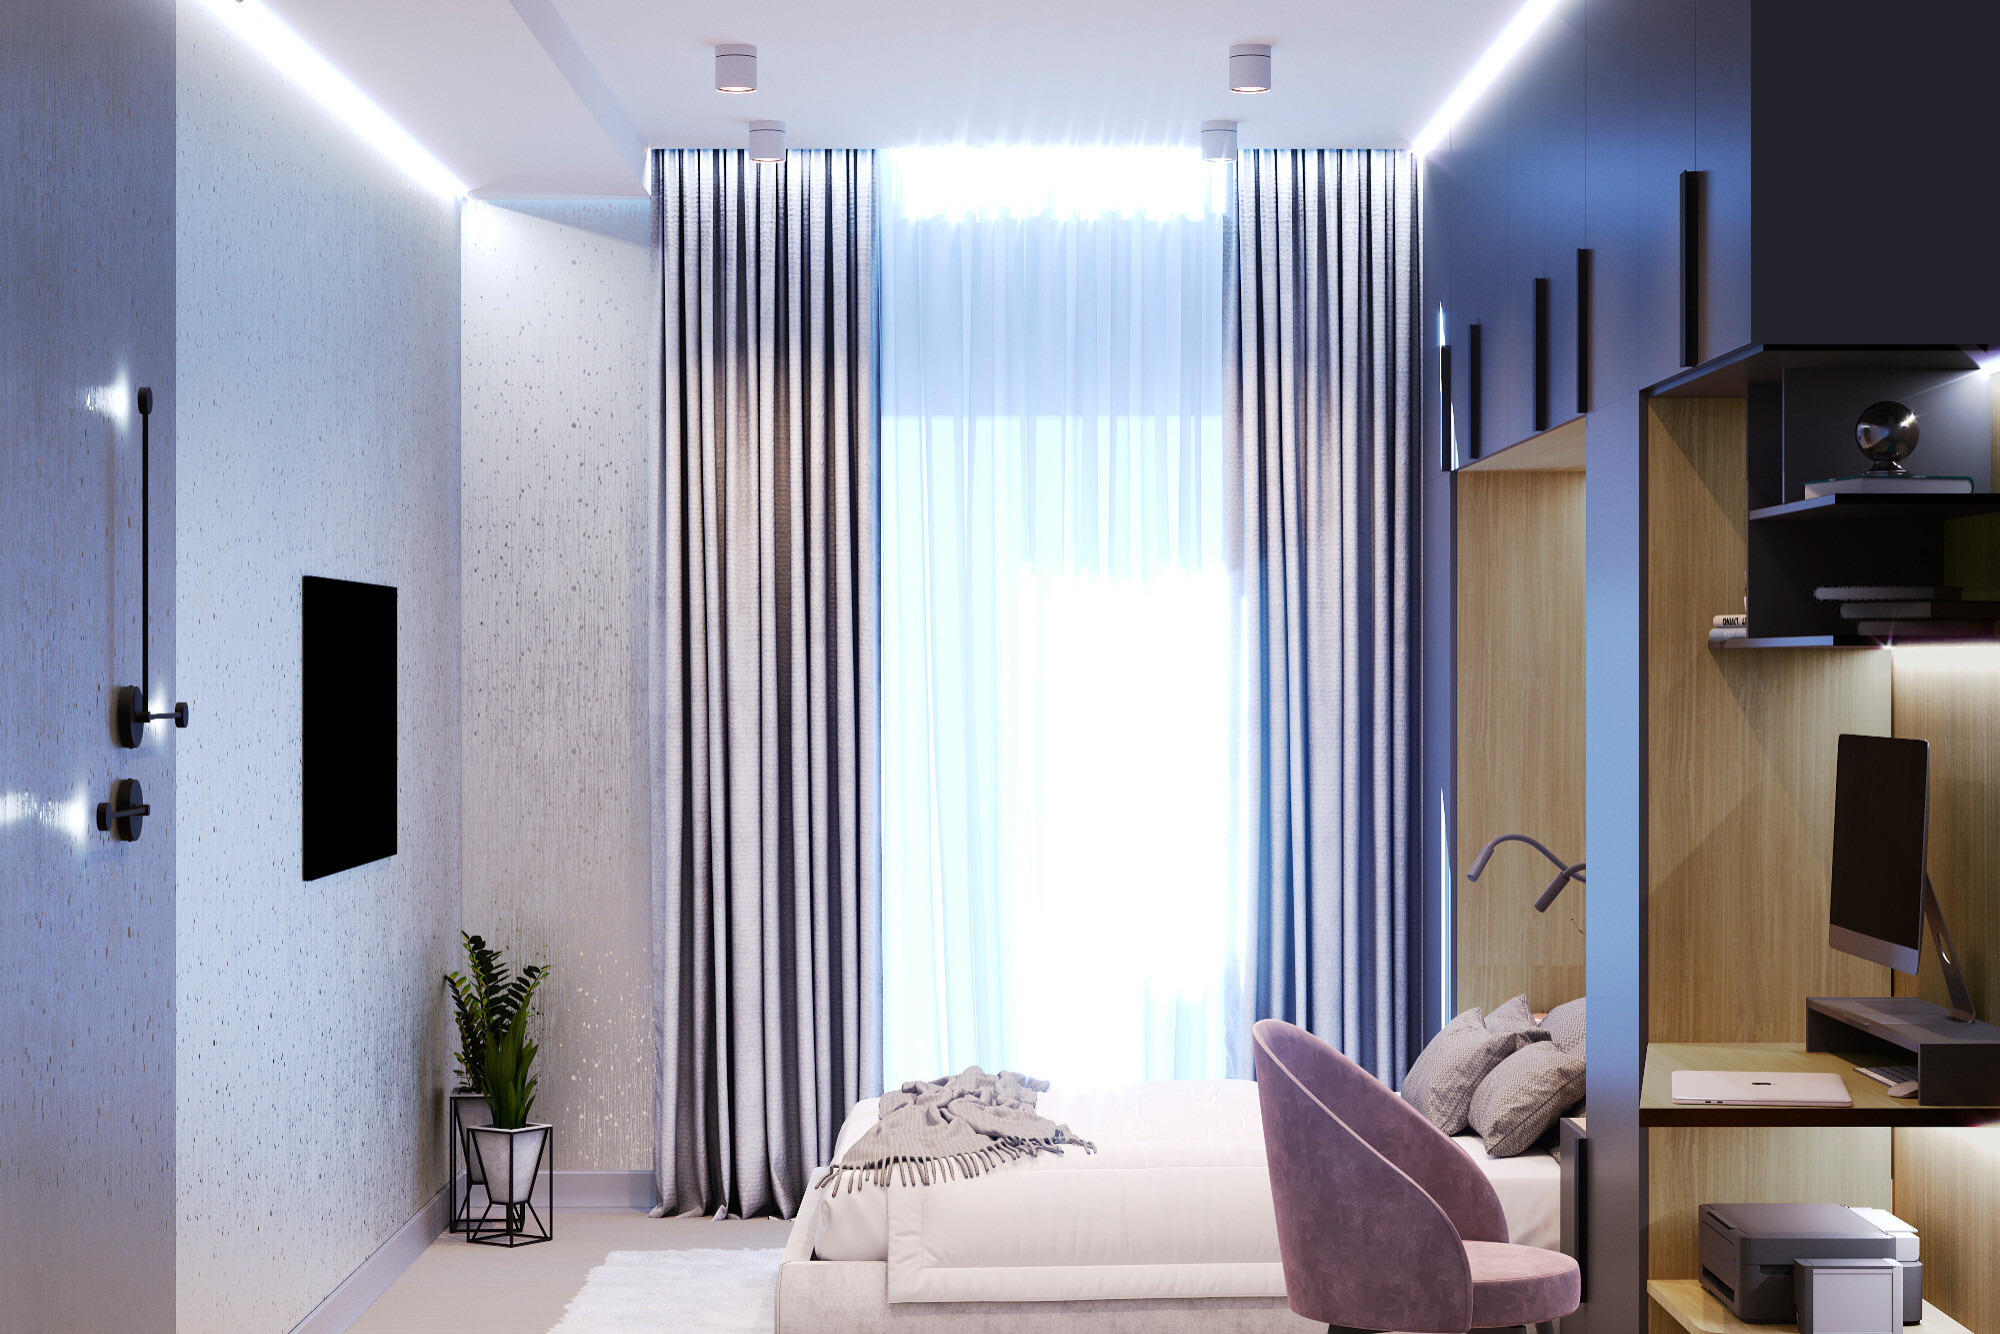 Интерьер гостиной cветовыми линиями, рейками с подсветкой, подсветкой настенной, подсветкой светодиодной, светильниками над кроватью и с подсветкой в современном стиле